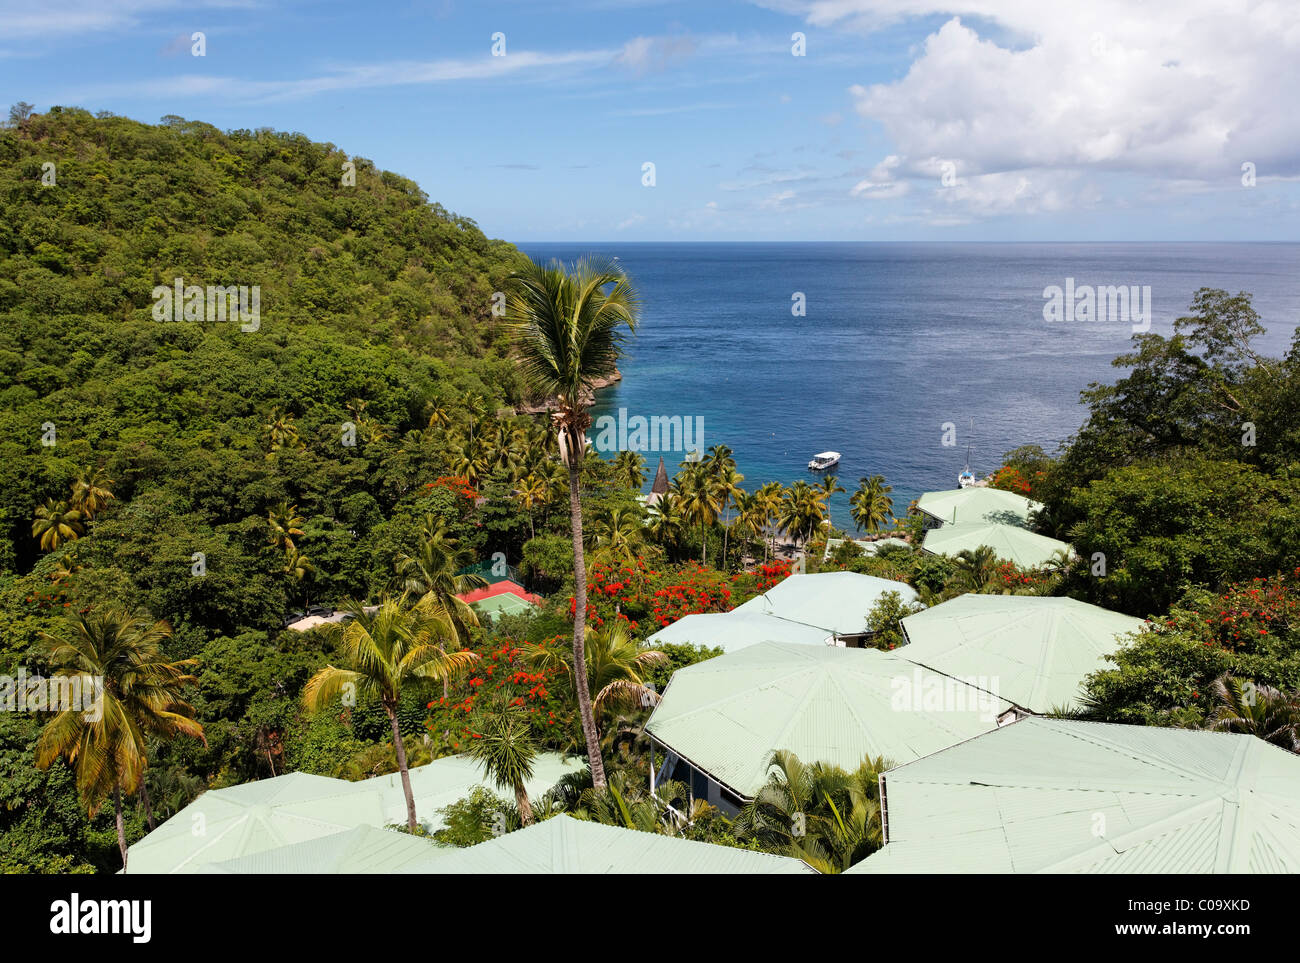 La baie de l'Anse Chastanet public avec des toits de l'hôtel Anse Chastanet Resort de luxe, Mer, LCA, Sainte-Lucie, Saint Lucia Banque D'Images